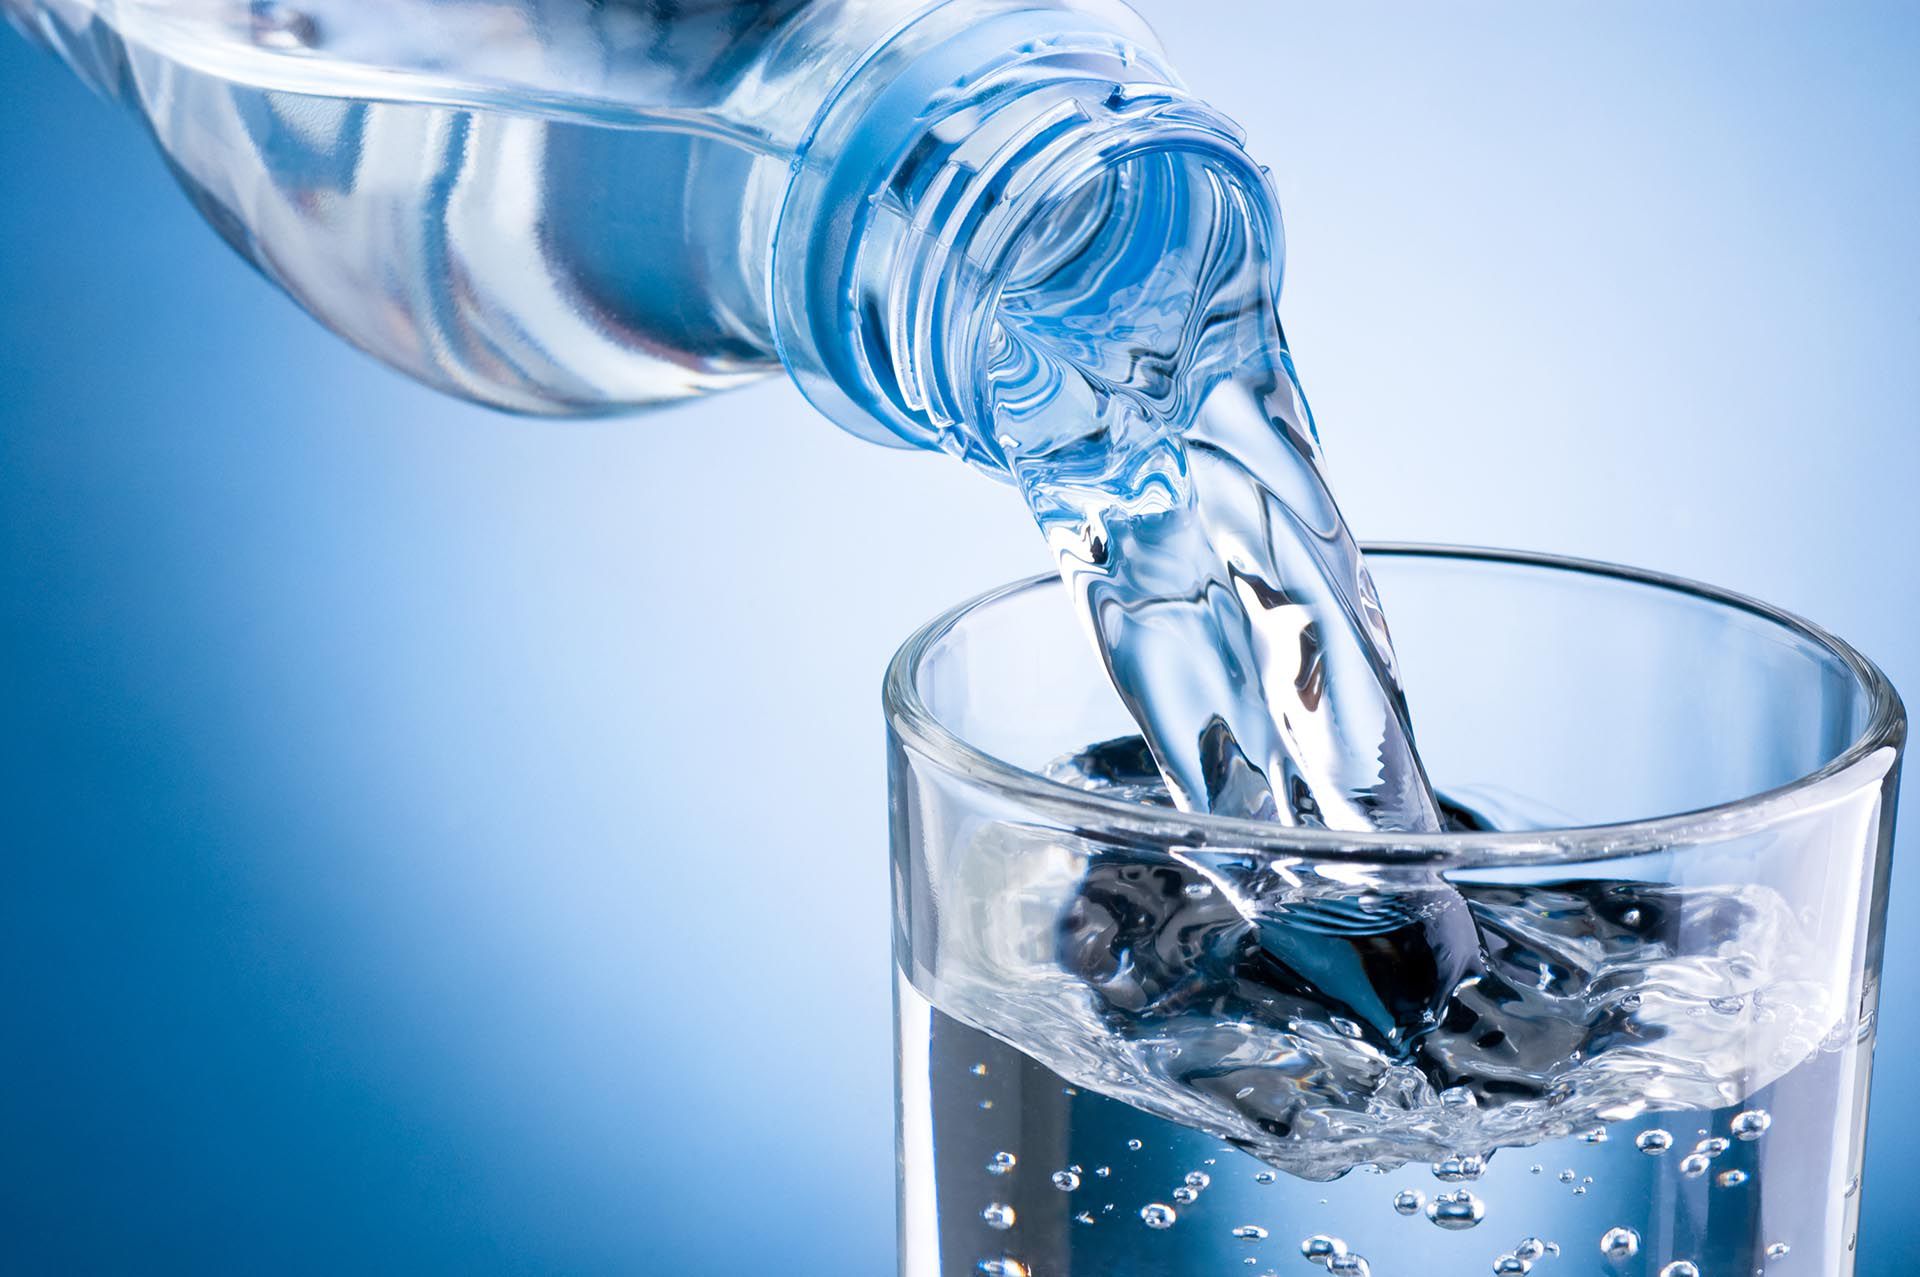 La hidratación diaria, un hábito esencial para mantener el equilibrio del cuerpo y prevenir enfermedades
(Getty Images)